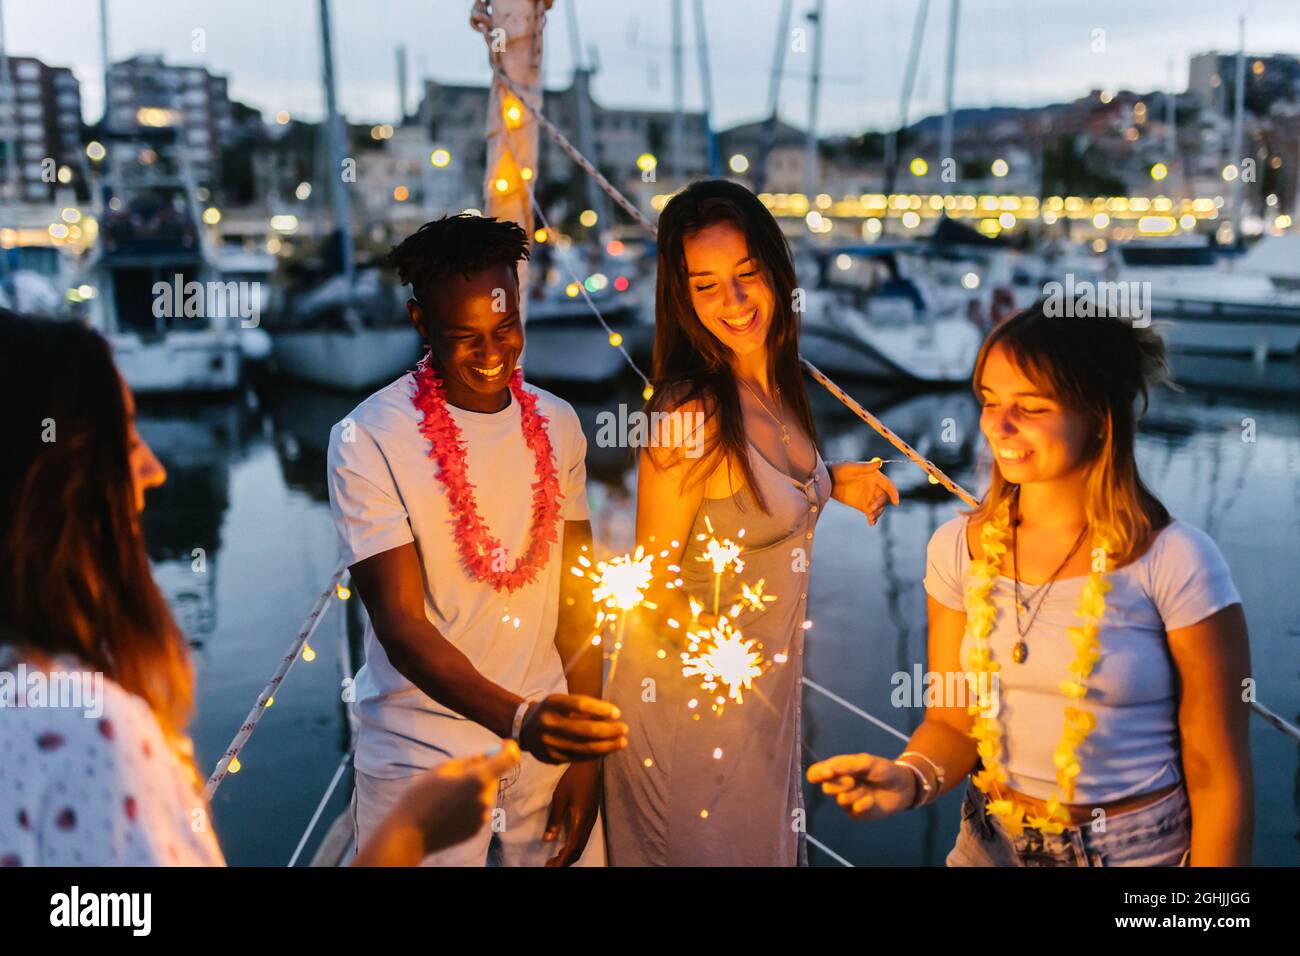 La gente felice festeggia insieme il compleanno o la vigilia di natale con i luccicanti sulla barca Foto Stock